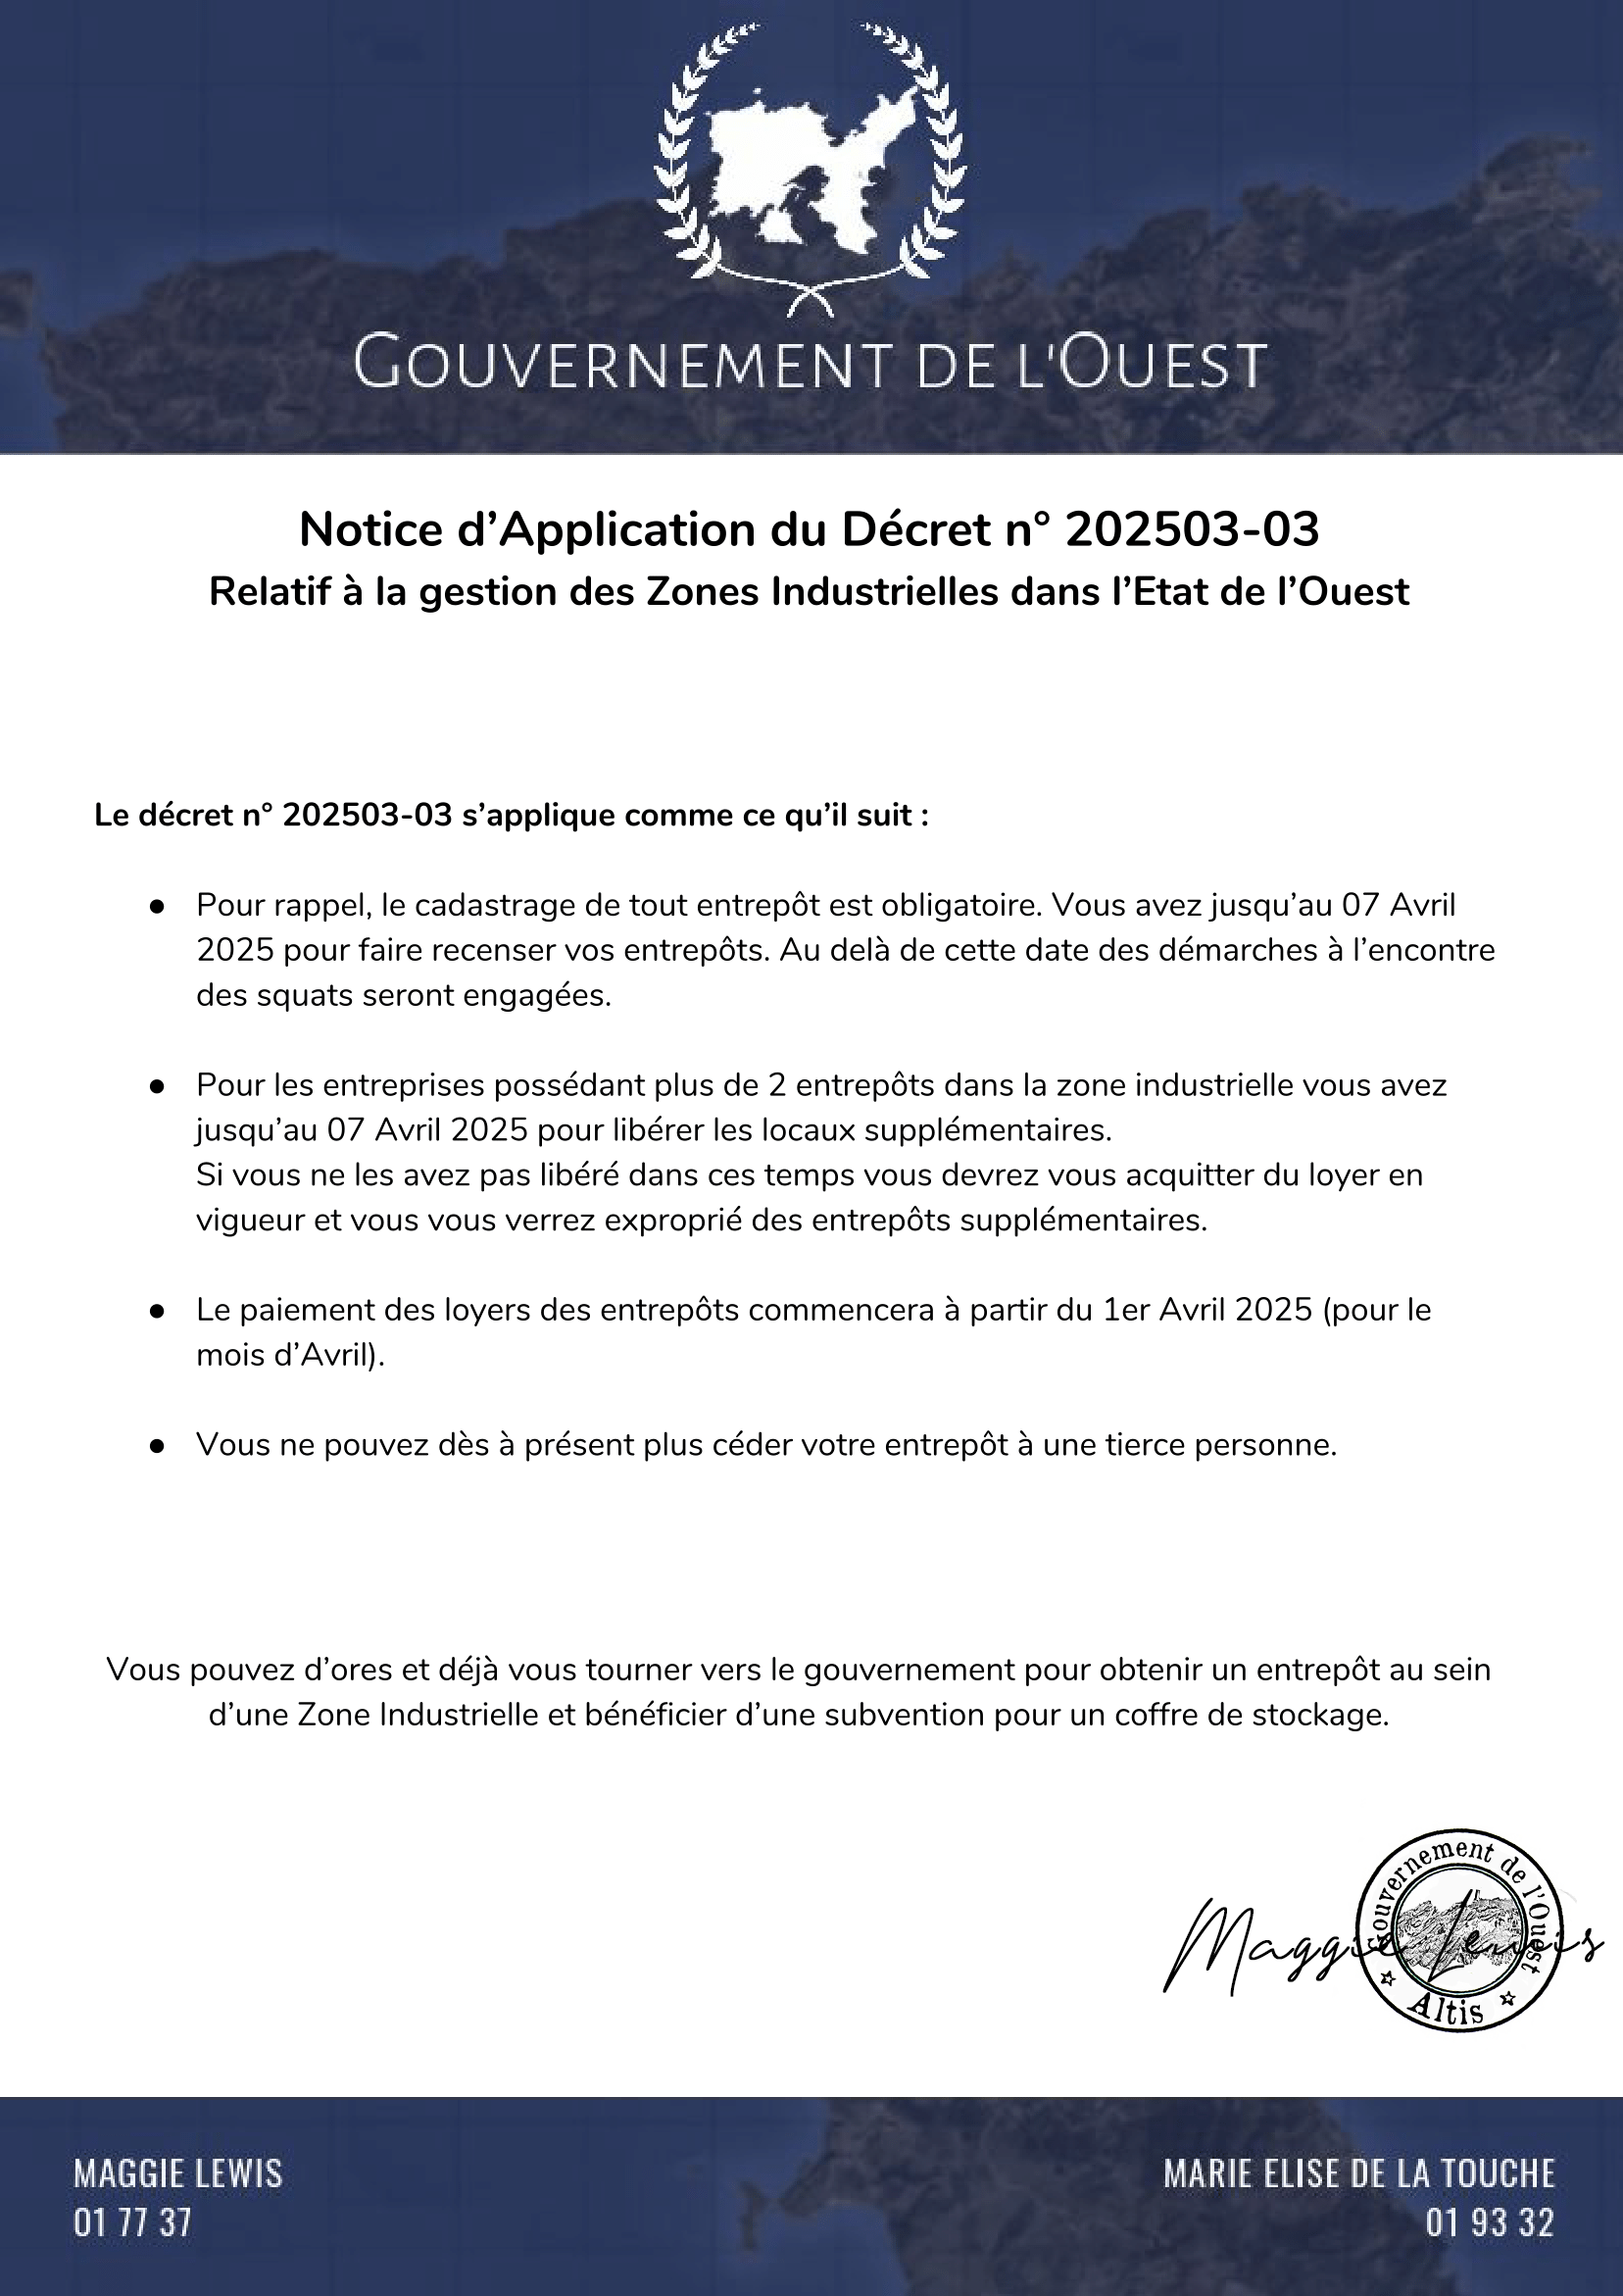 Notice d'Application Décret n° 202503-03 Z.I. de l'Ouest (1)-1.png